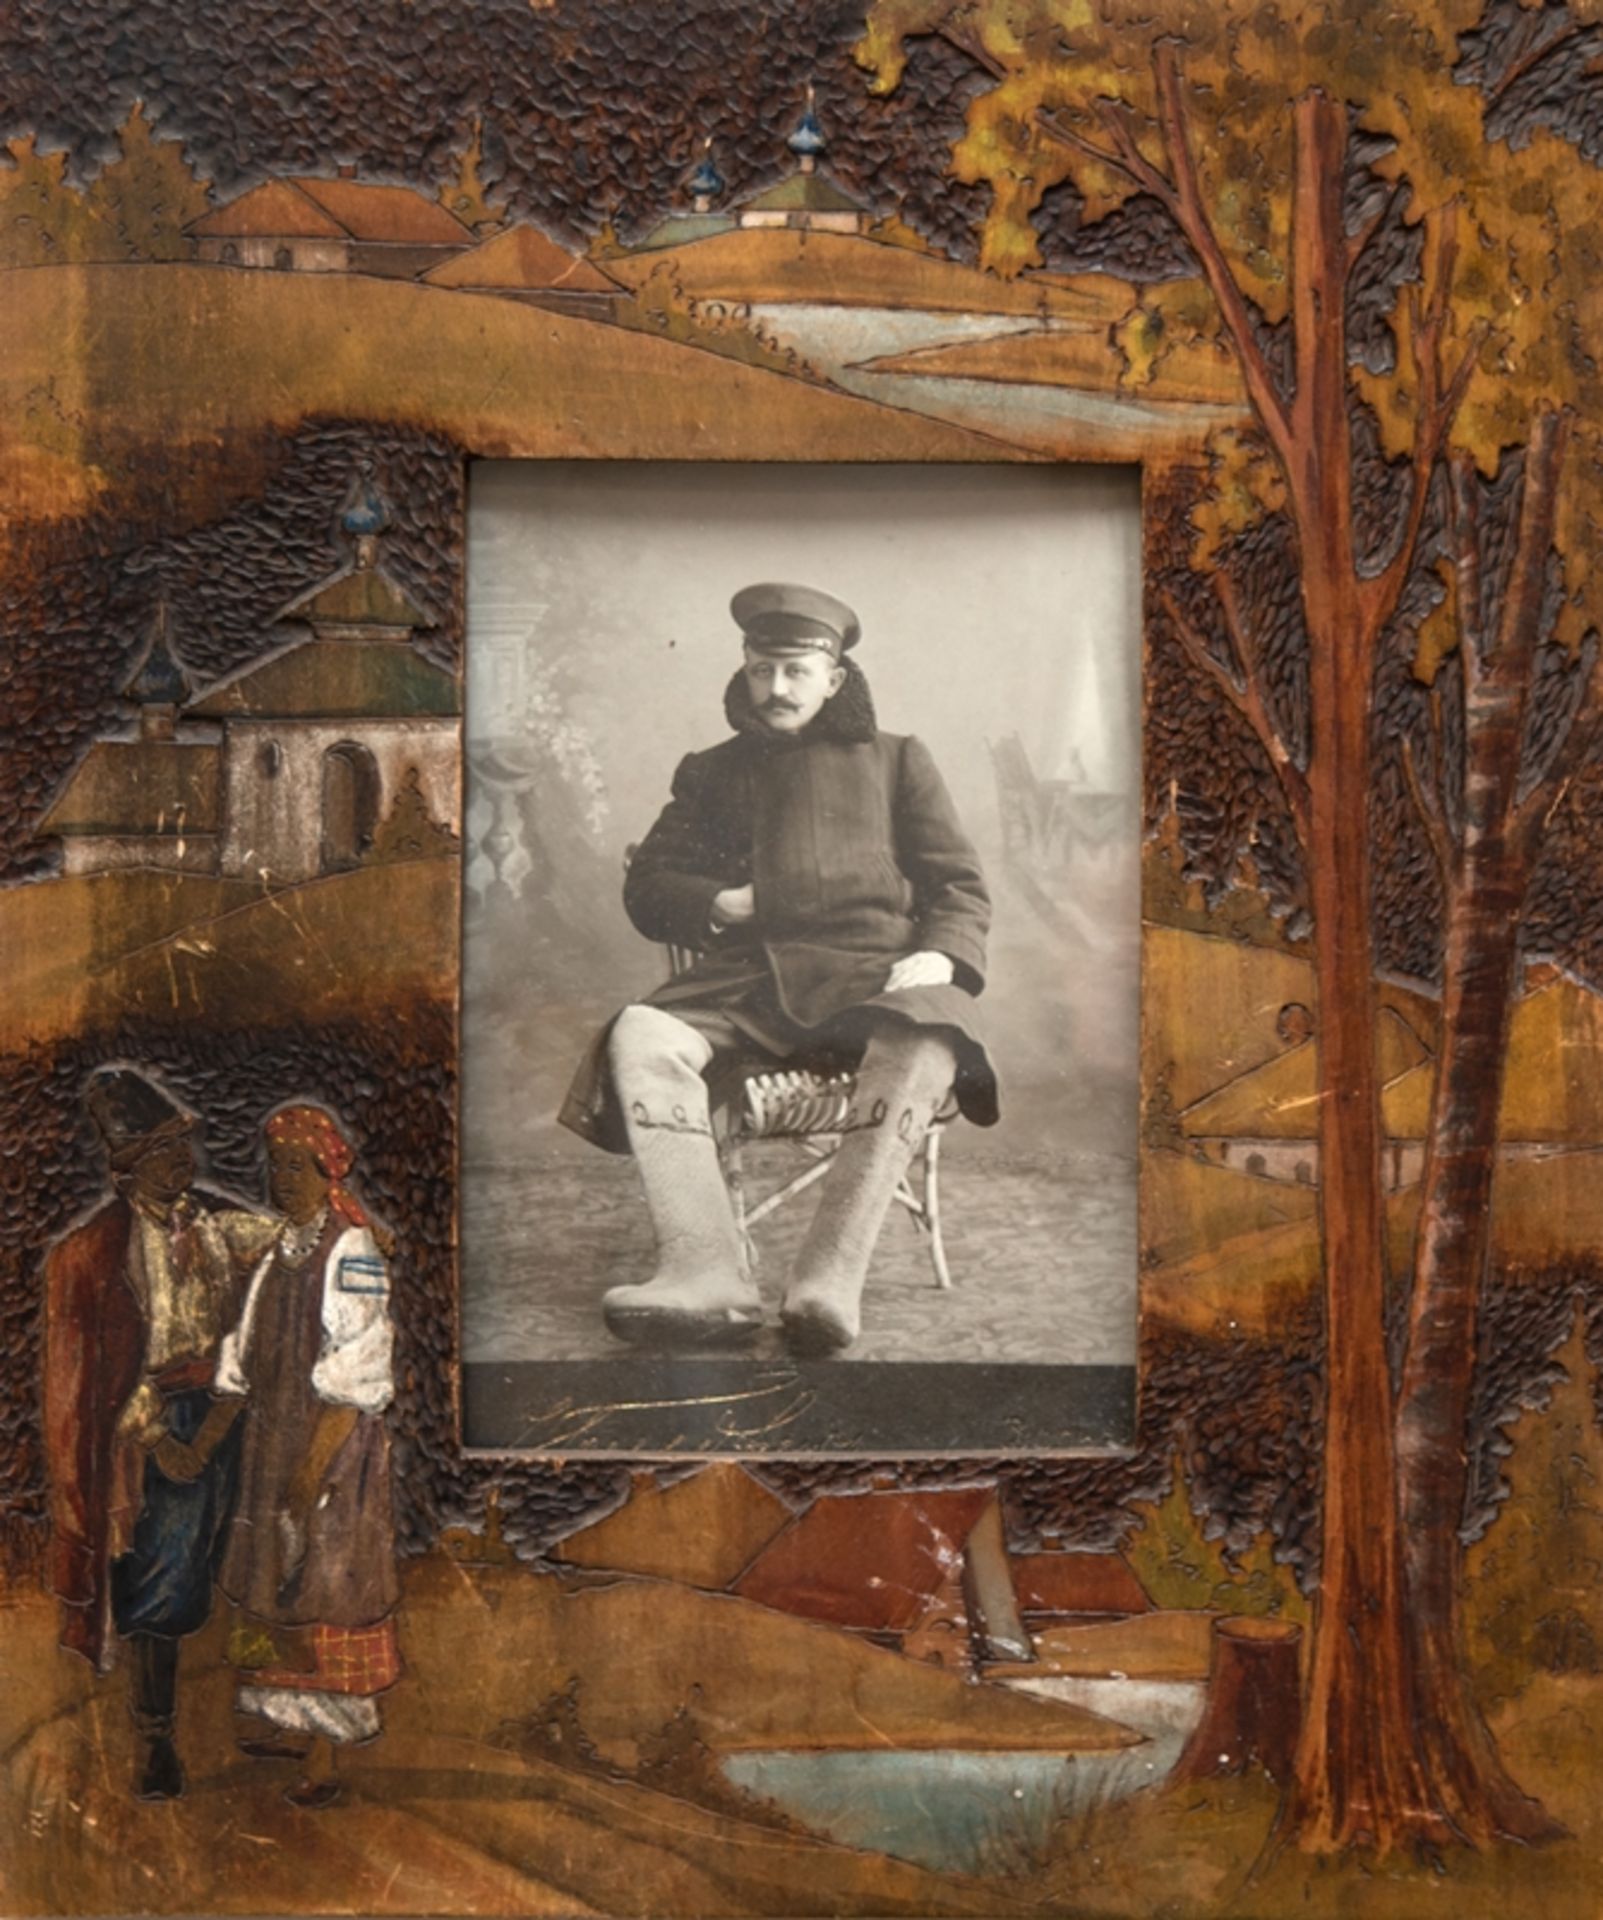 Bilderrahmen, Russland, Künstlerkolonie Abramtsewo, um 1900, Holz gecshnitzt, farbig gefasst, verso